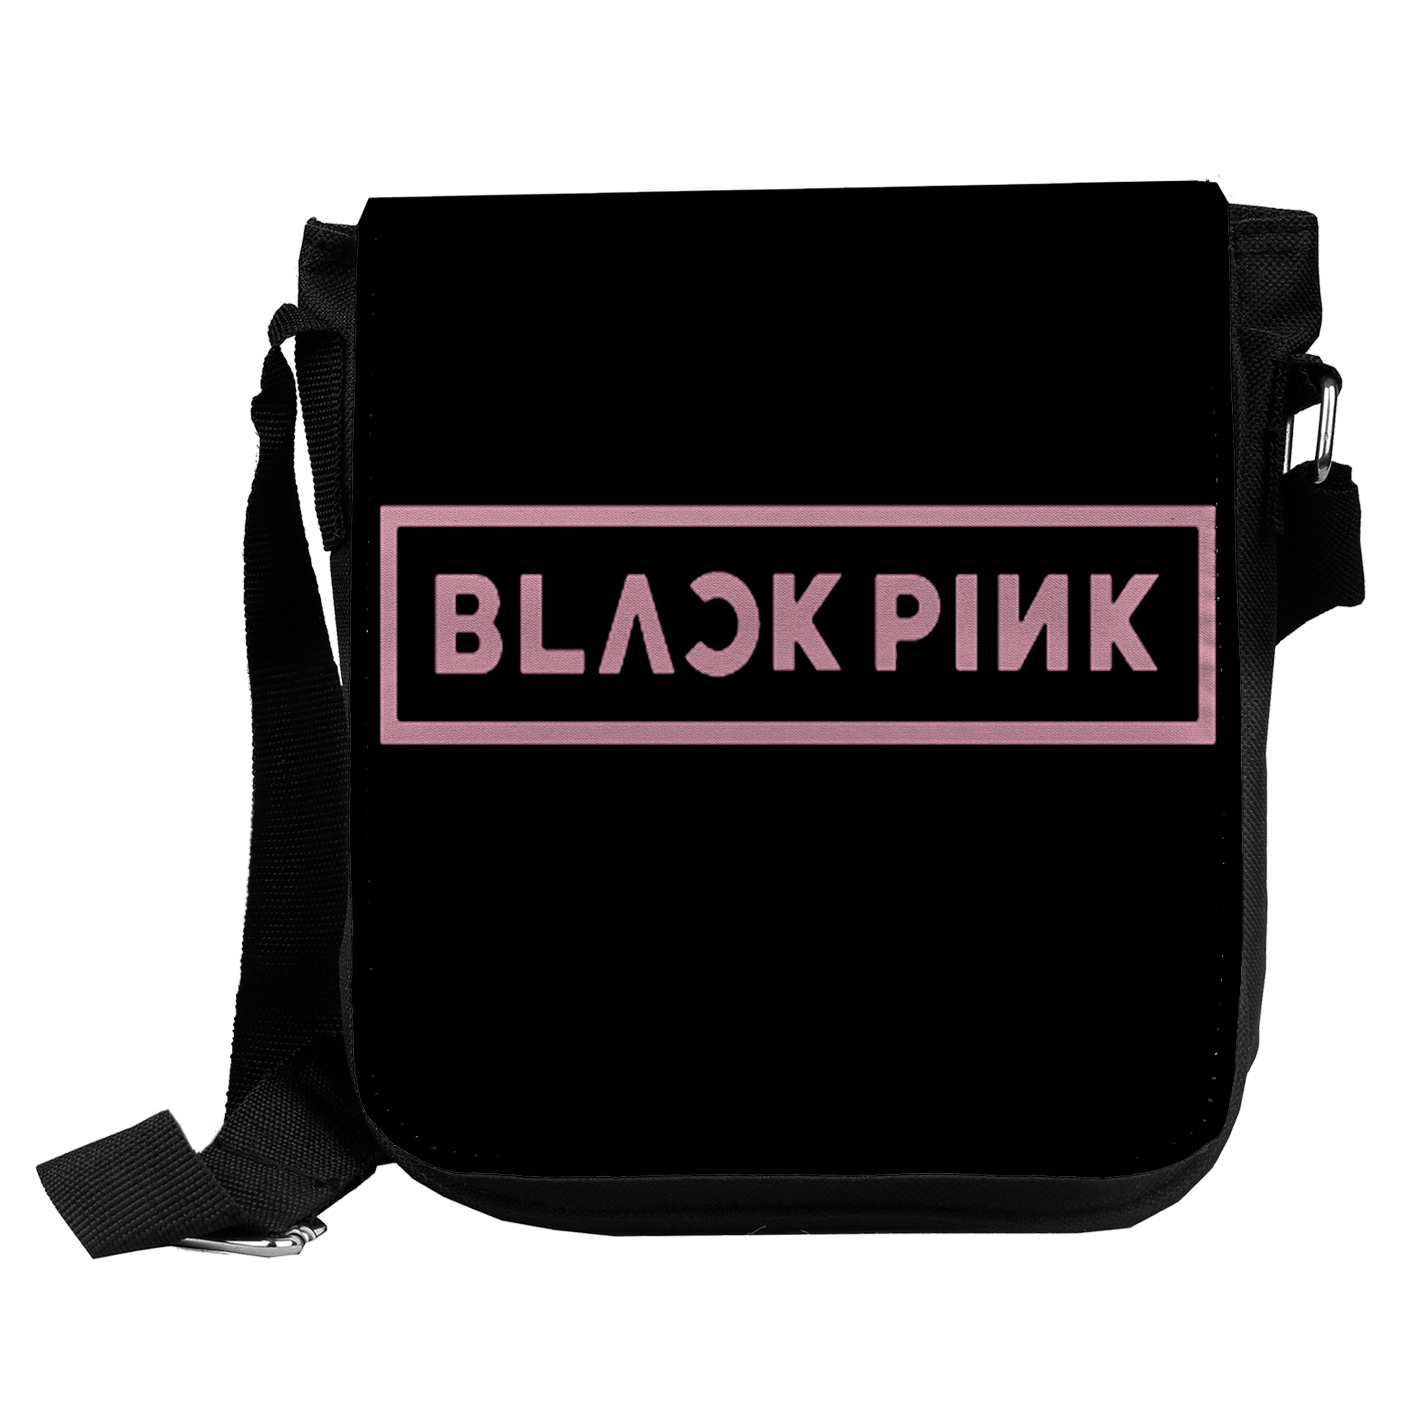 کیف رودوشی دخترانه طرح black pink کدkd292